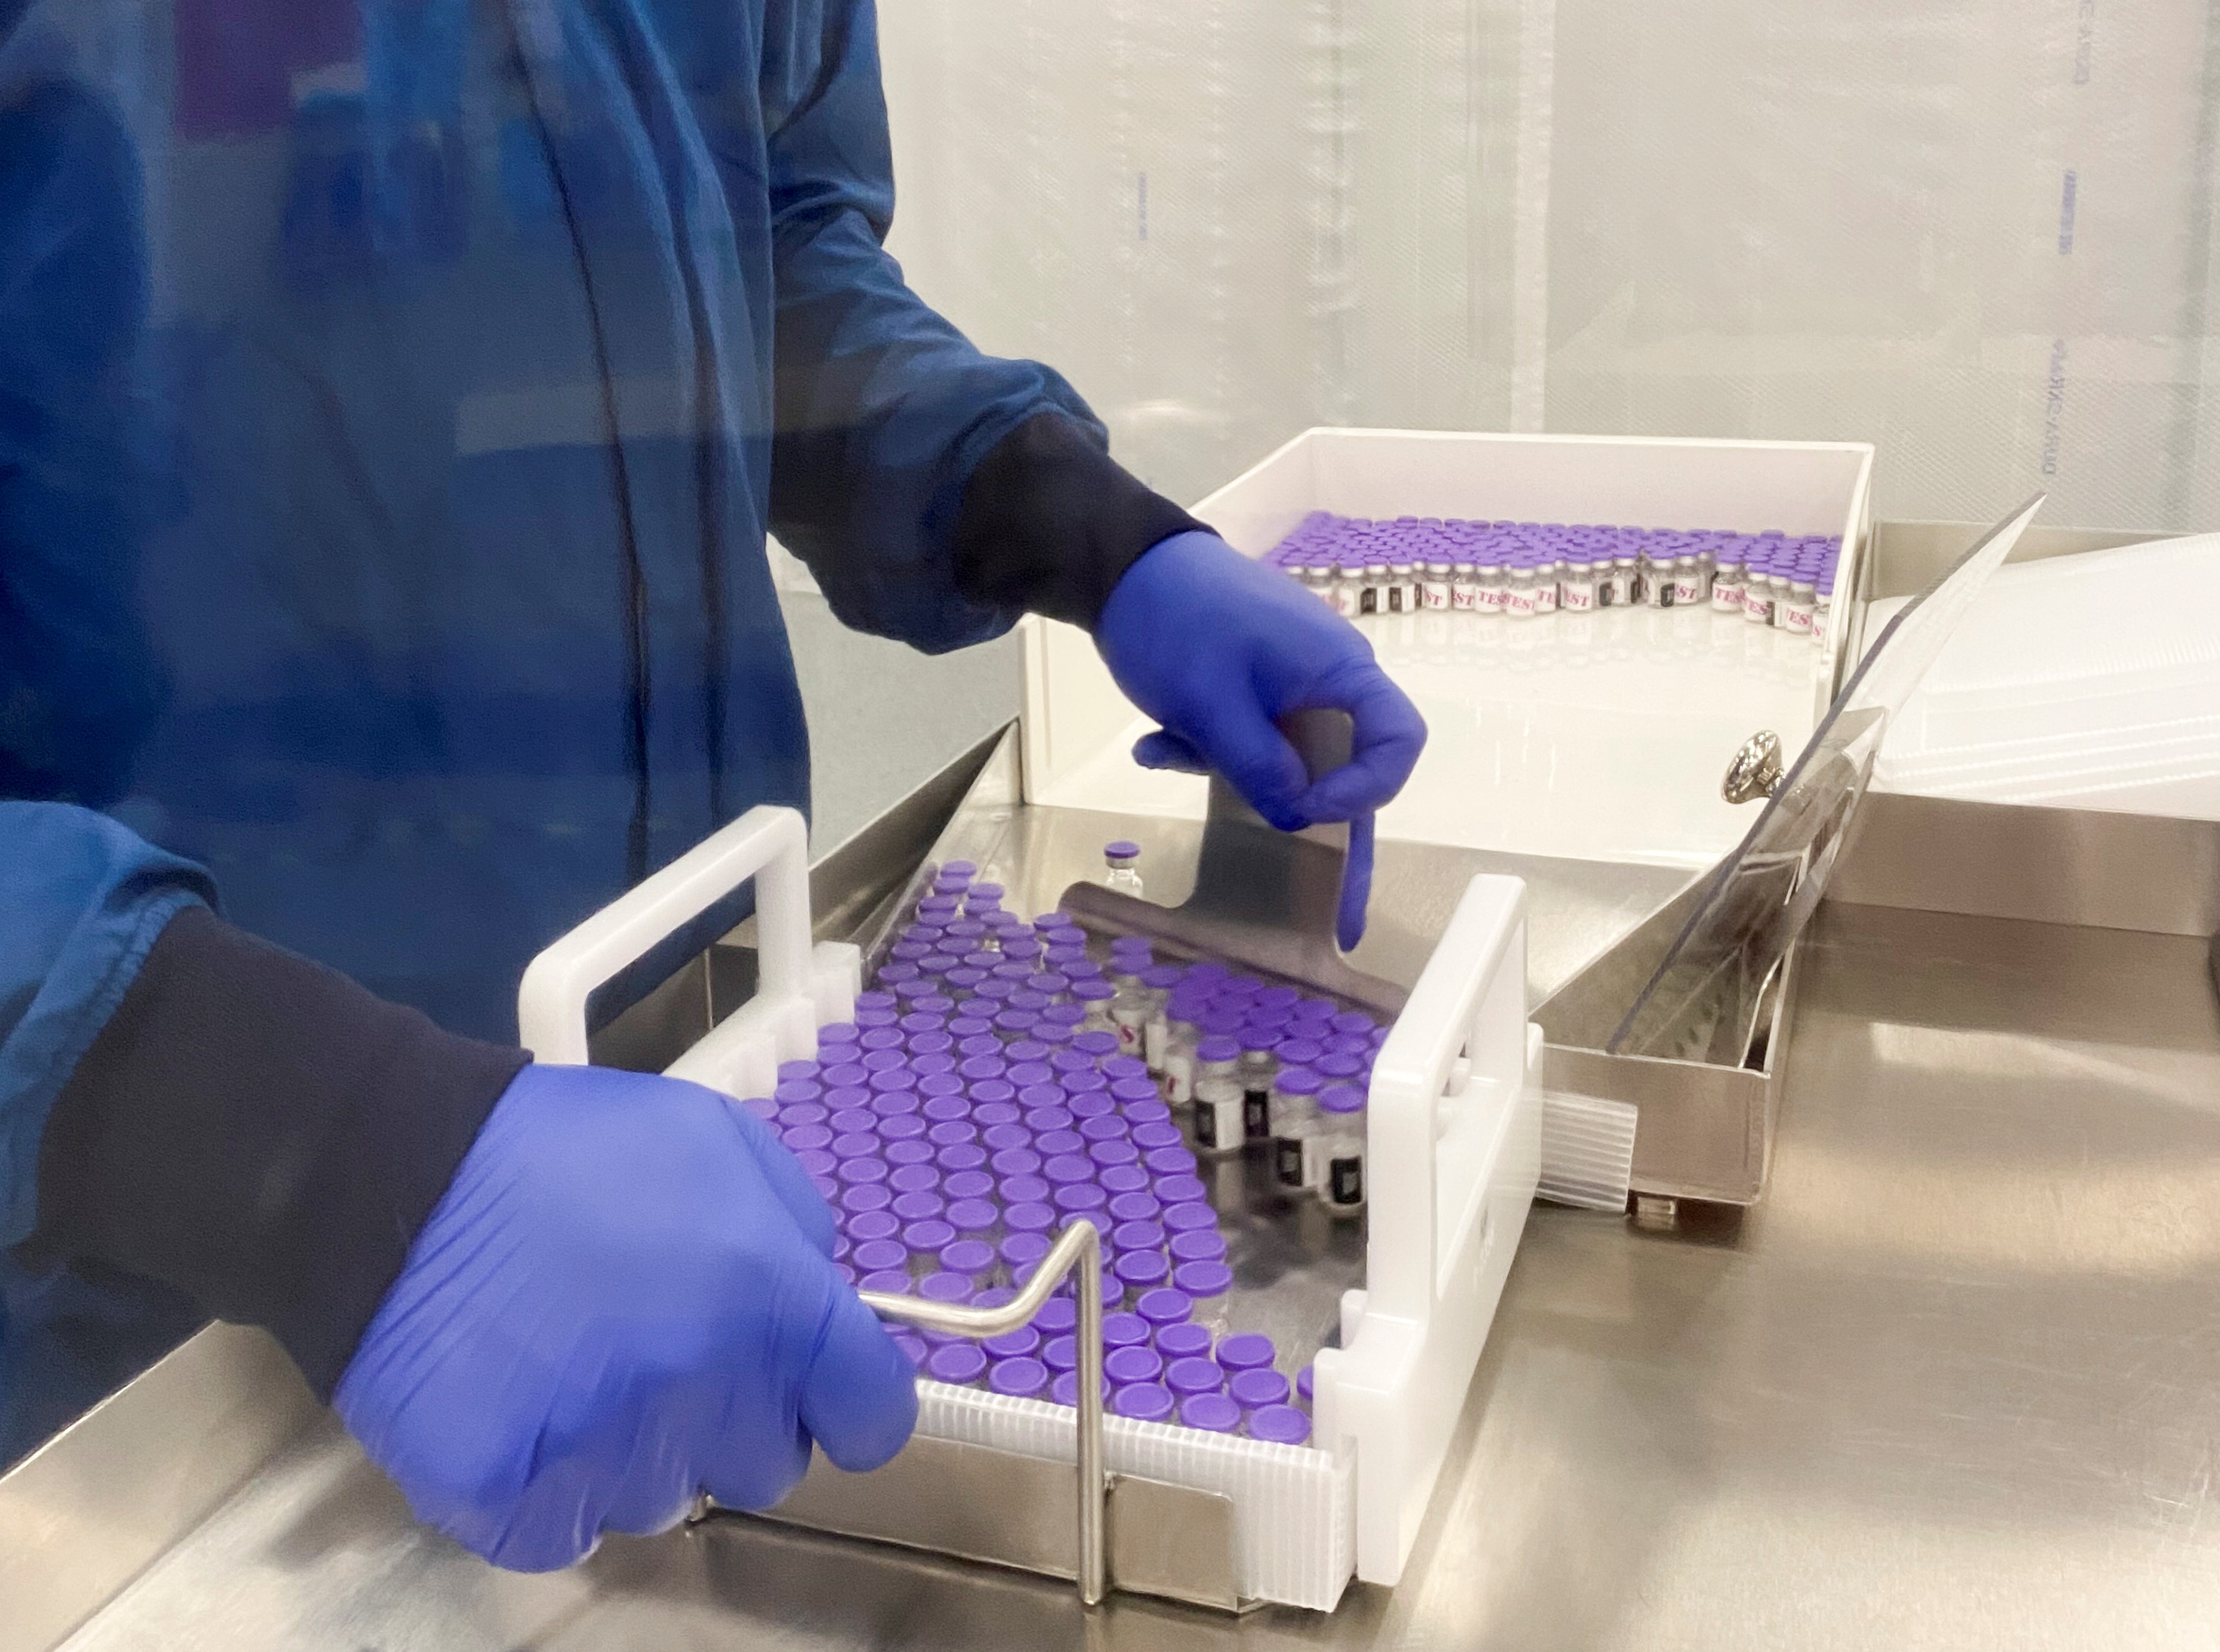 Imagen facilitada por la farmacéutica Pfizer que muestra viales de la vacuna para la covid-19 en un laboratorio. EFE/EPA/PFIZER HANDOUT
